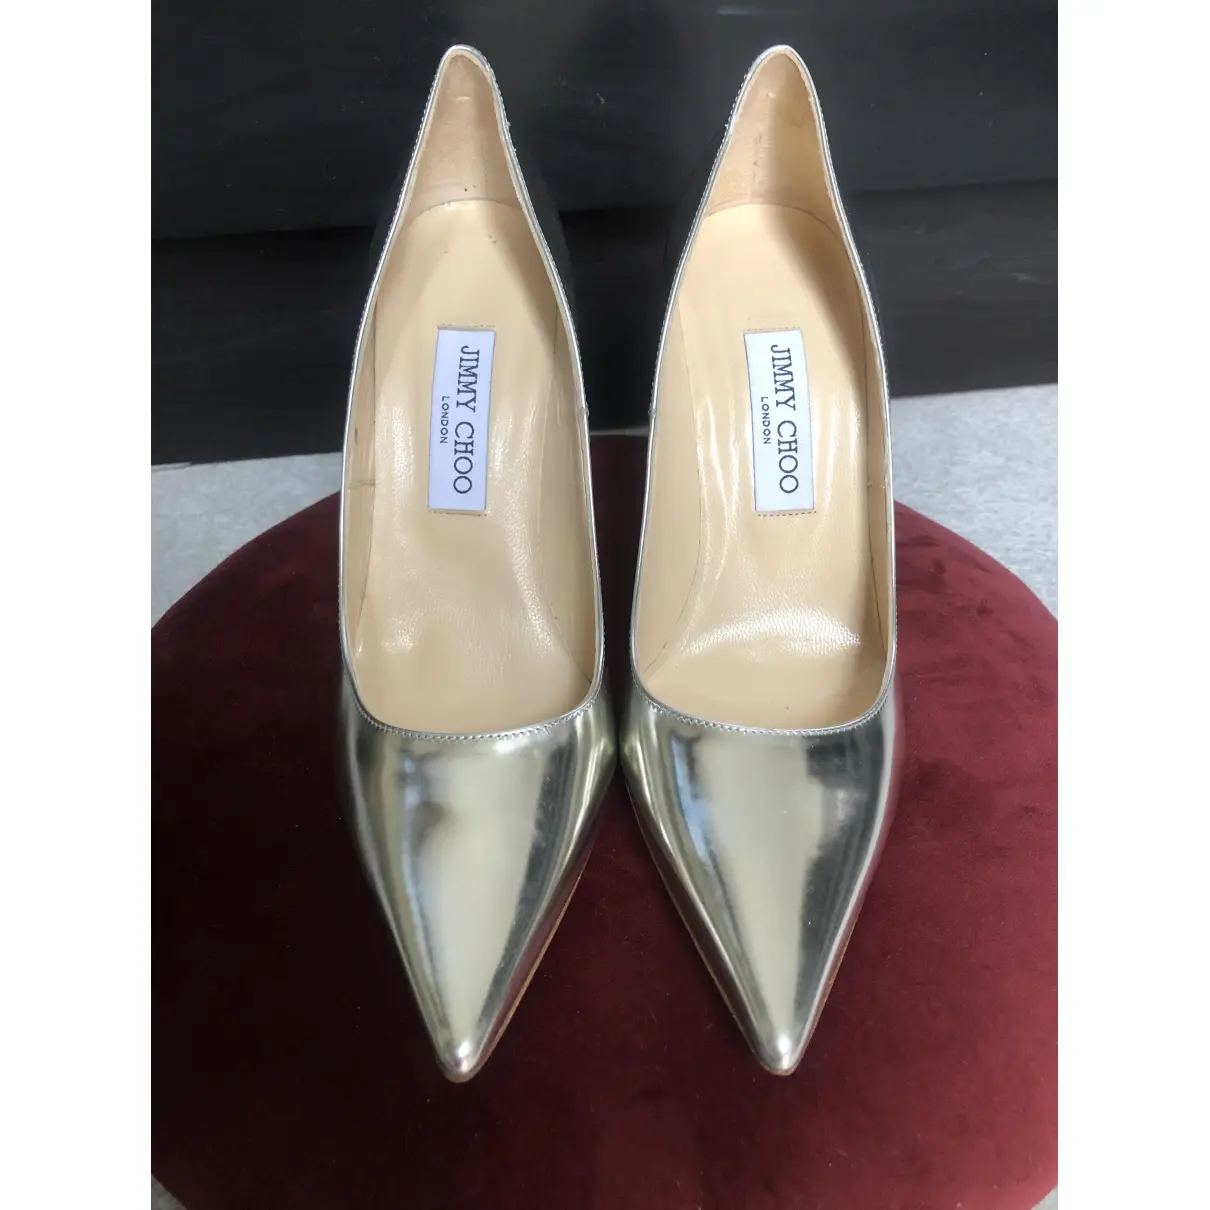 Buy Jimmy Choo Anouk leather heels online